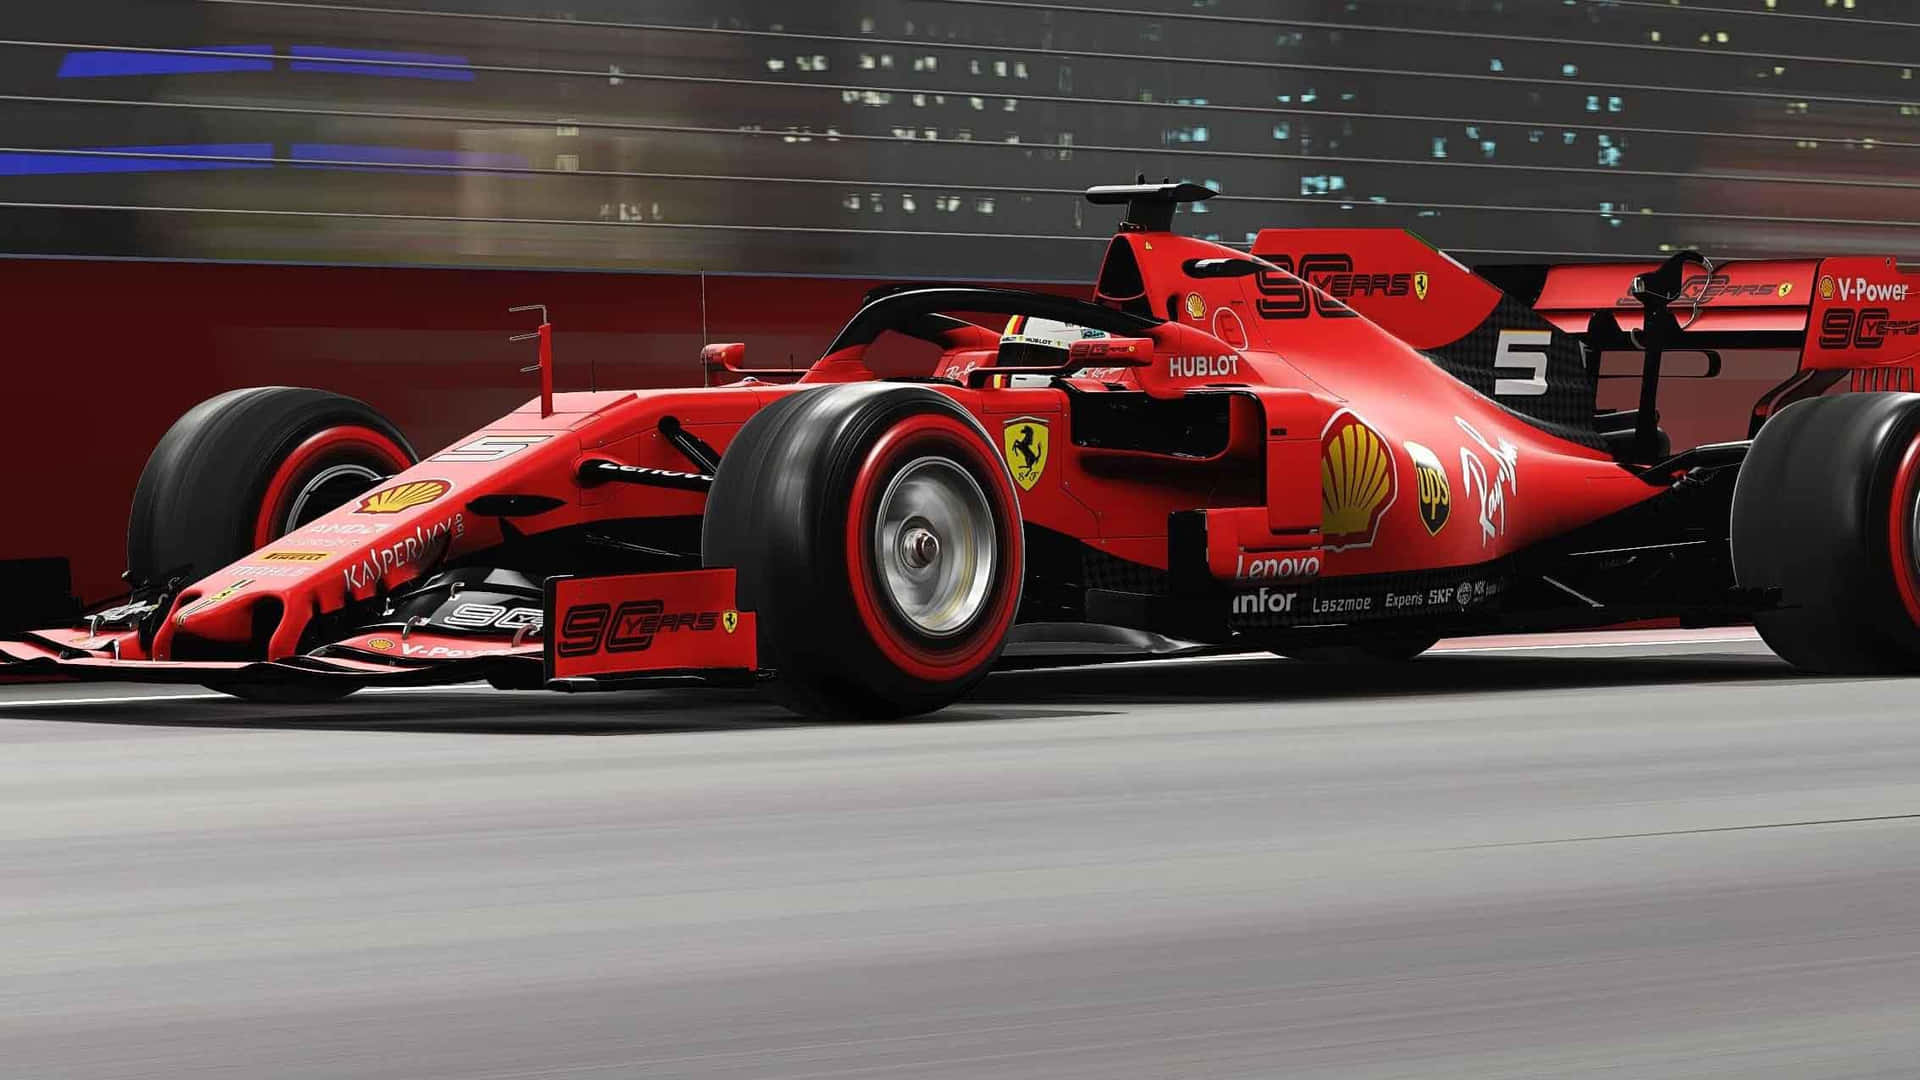 Ferrarif1 2019 - F1 2019 - F1 2019 - F1 2019 - F1 2019 -